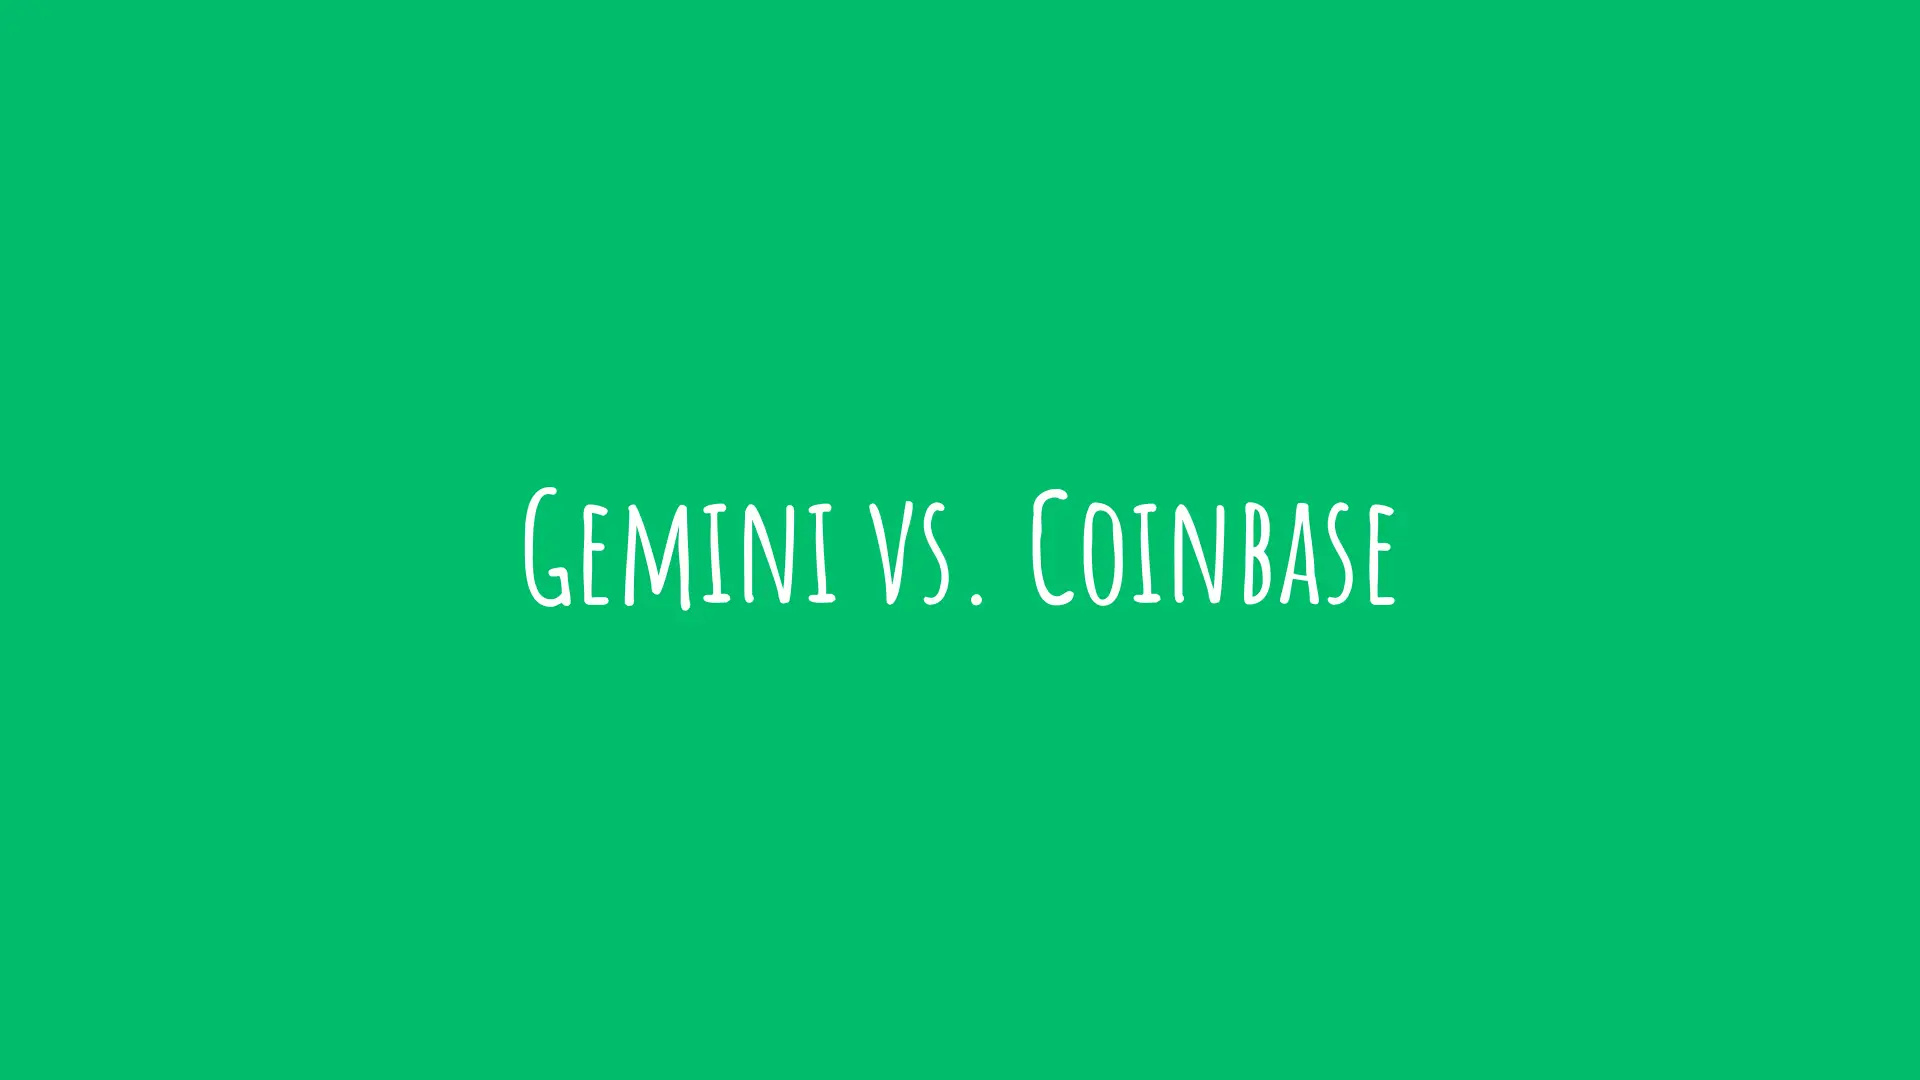 reddit gemini vs coinbase